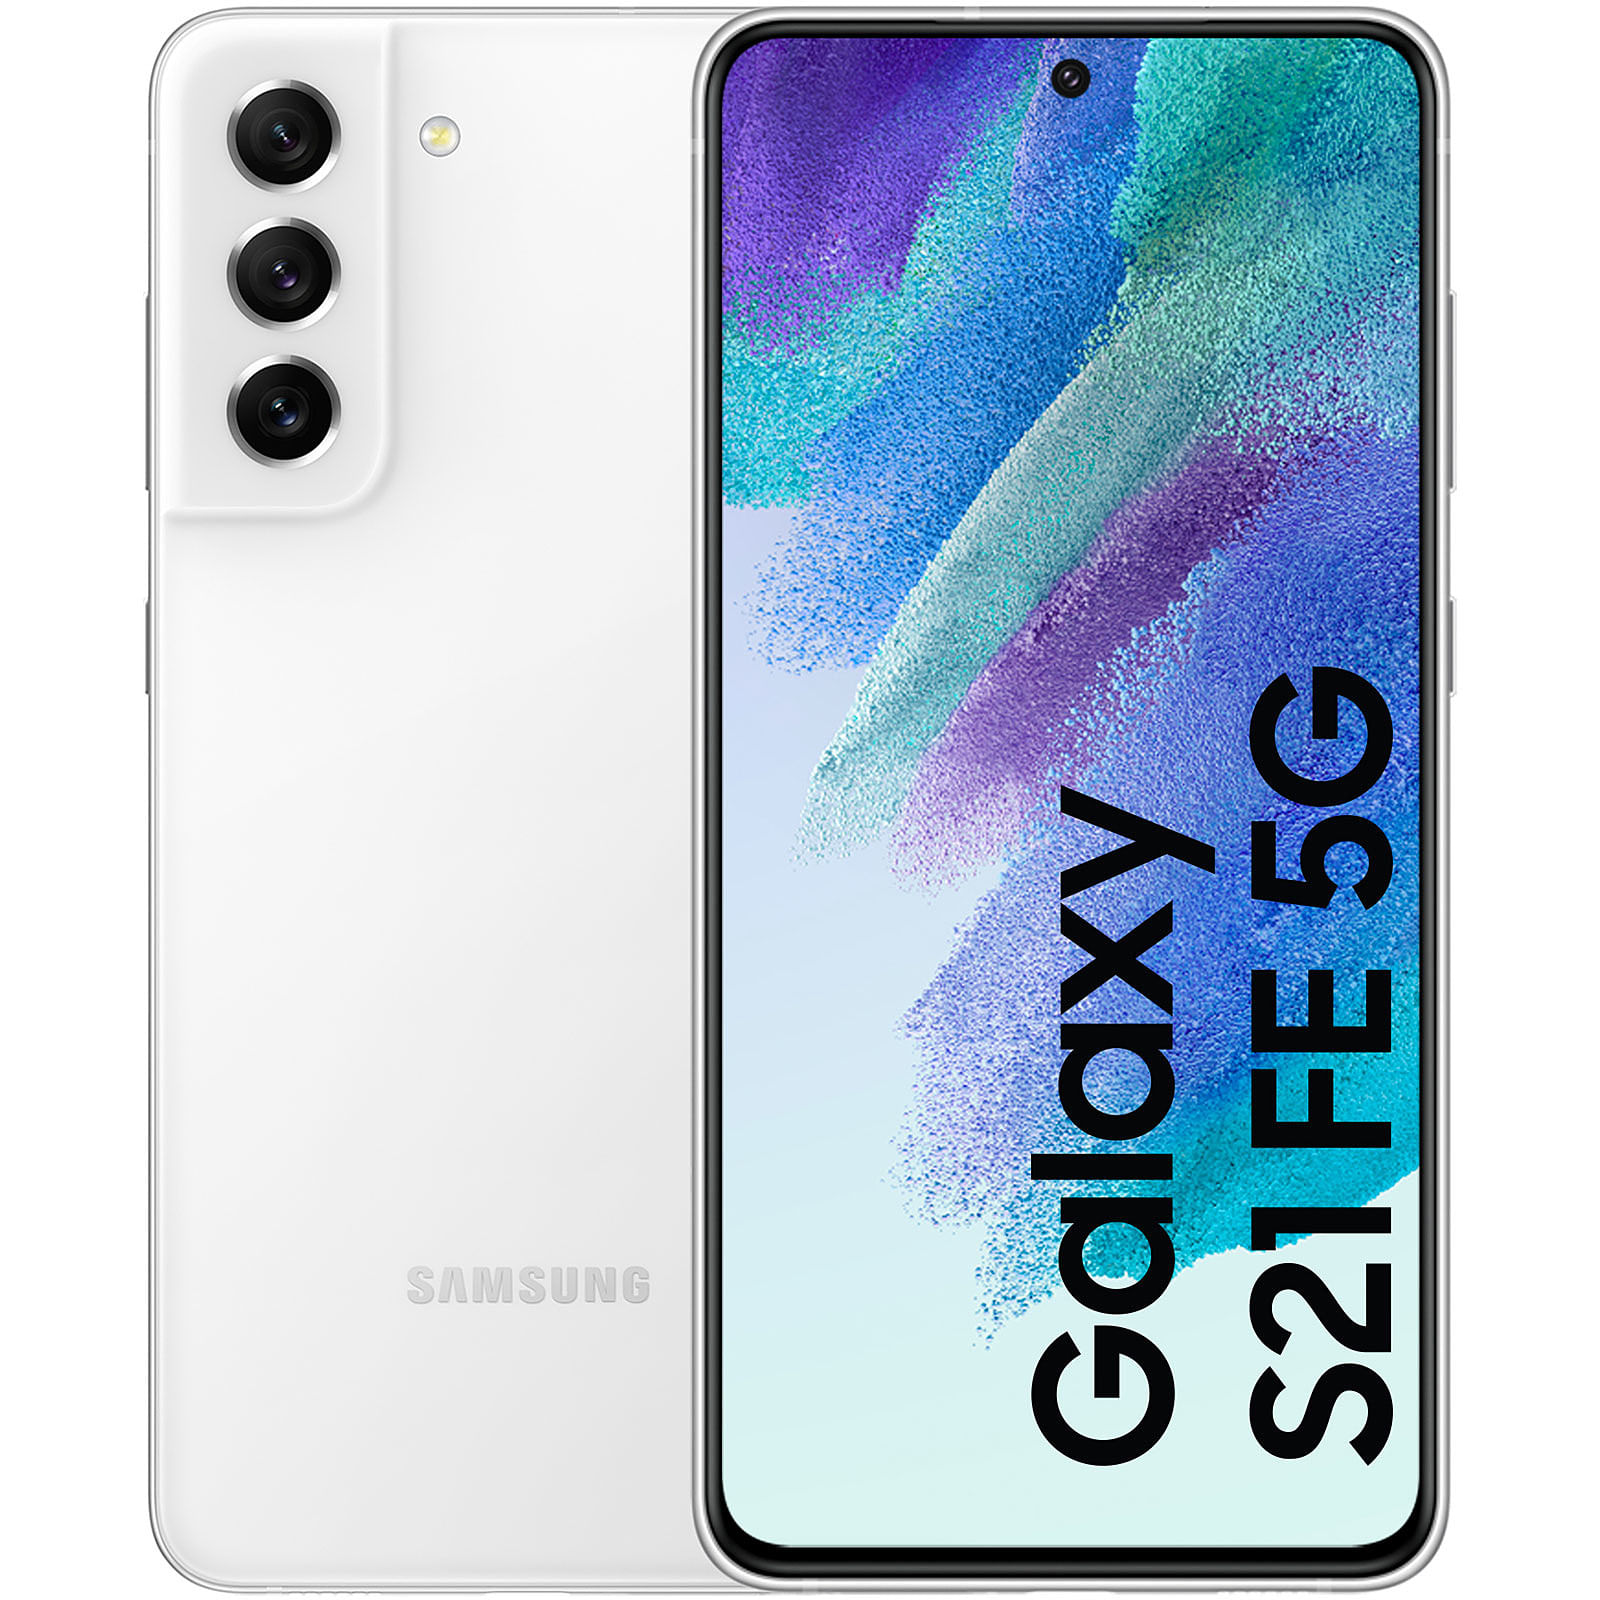 Galaxy S21 FE, una imagen profesional con el mayor rendimiento